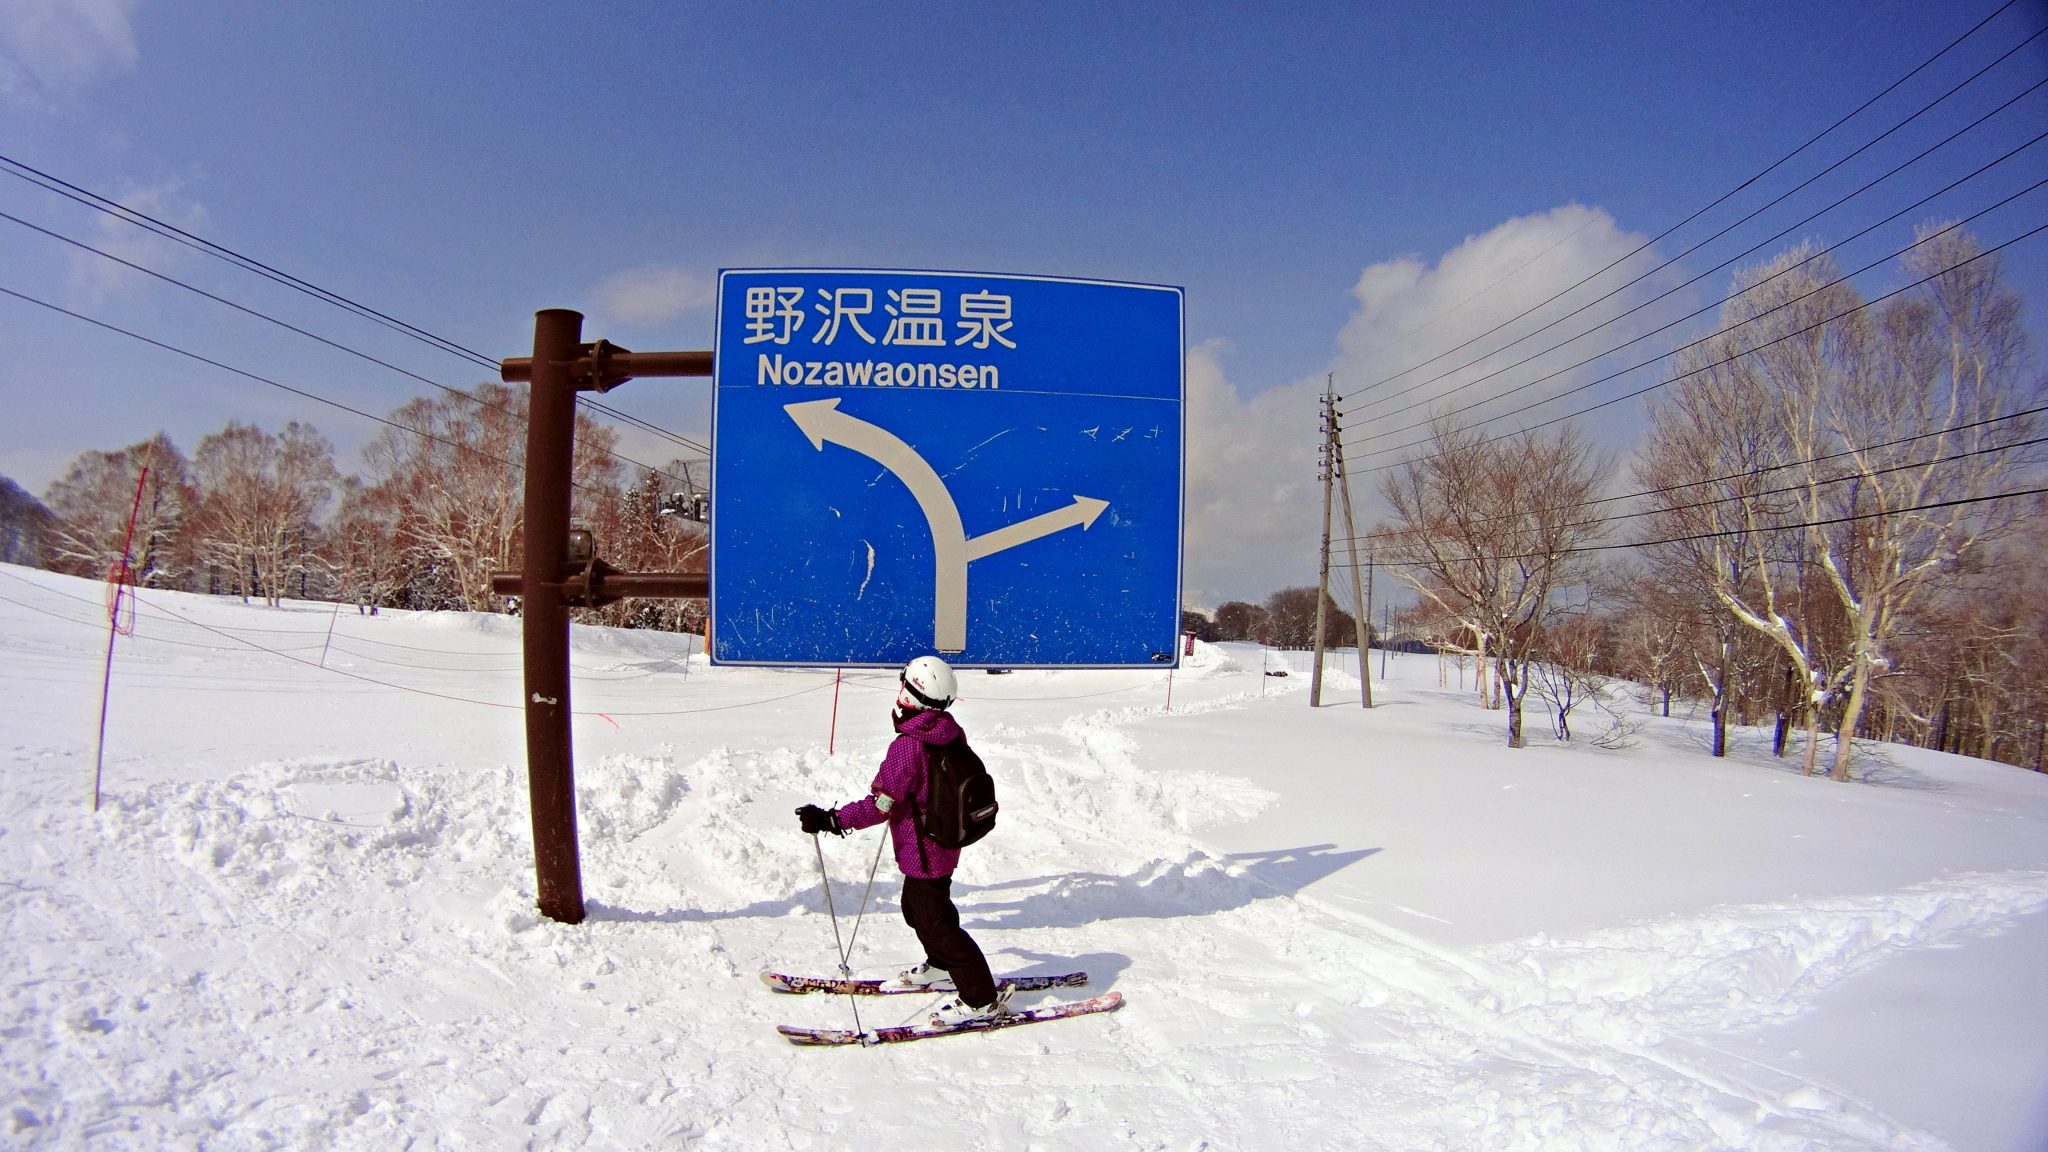 5 dôvodov prečo ísť na Working Holiday do Japonska v zime